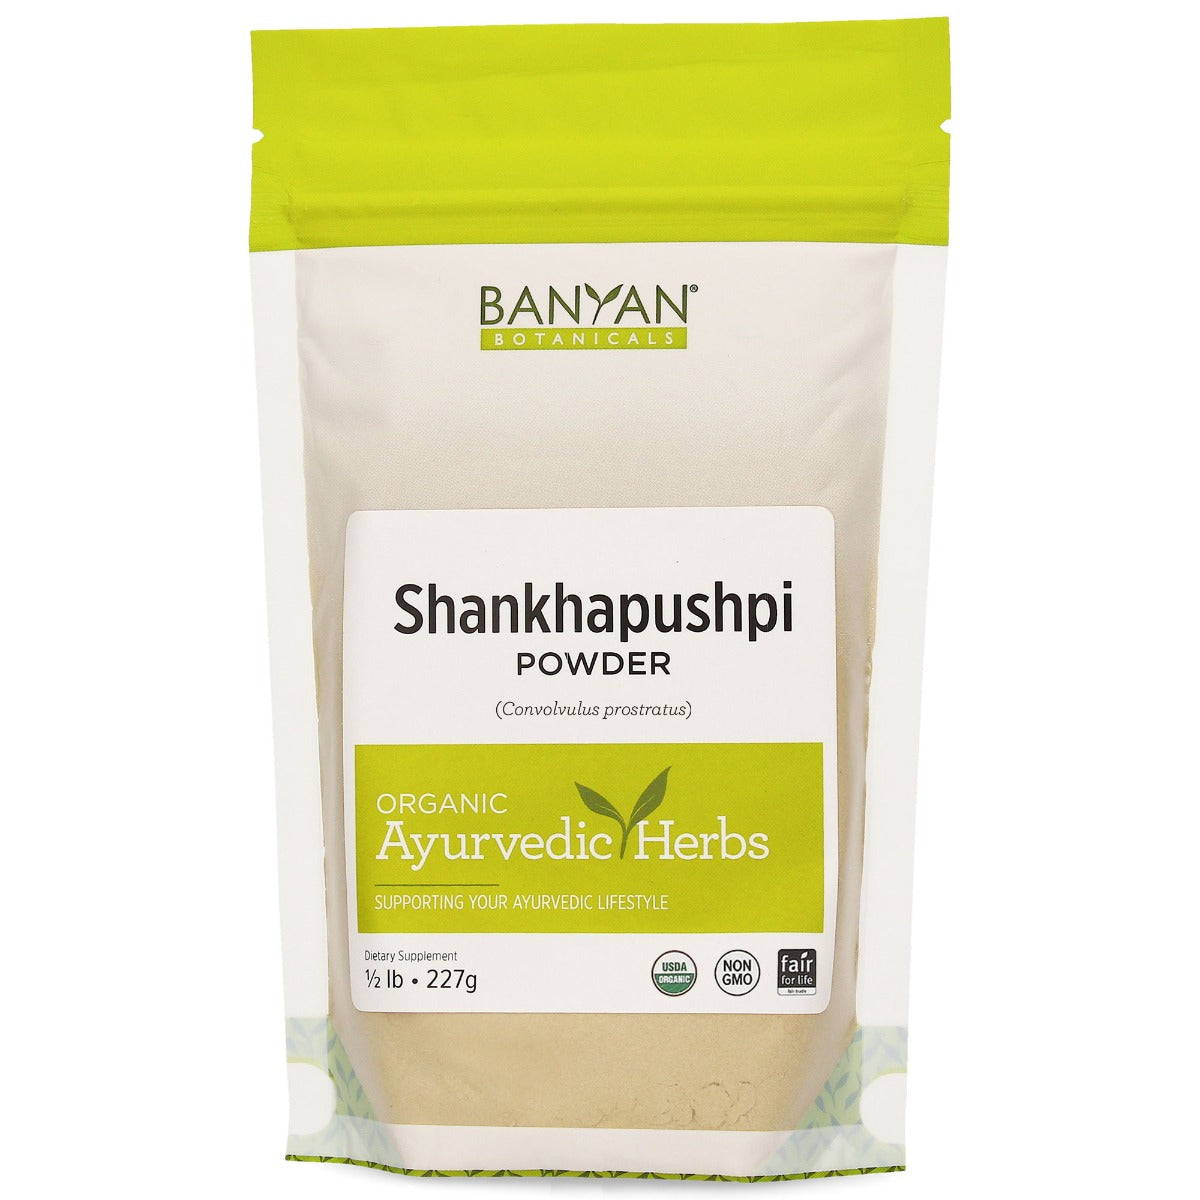 Shankhapushi powder